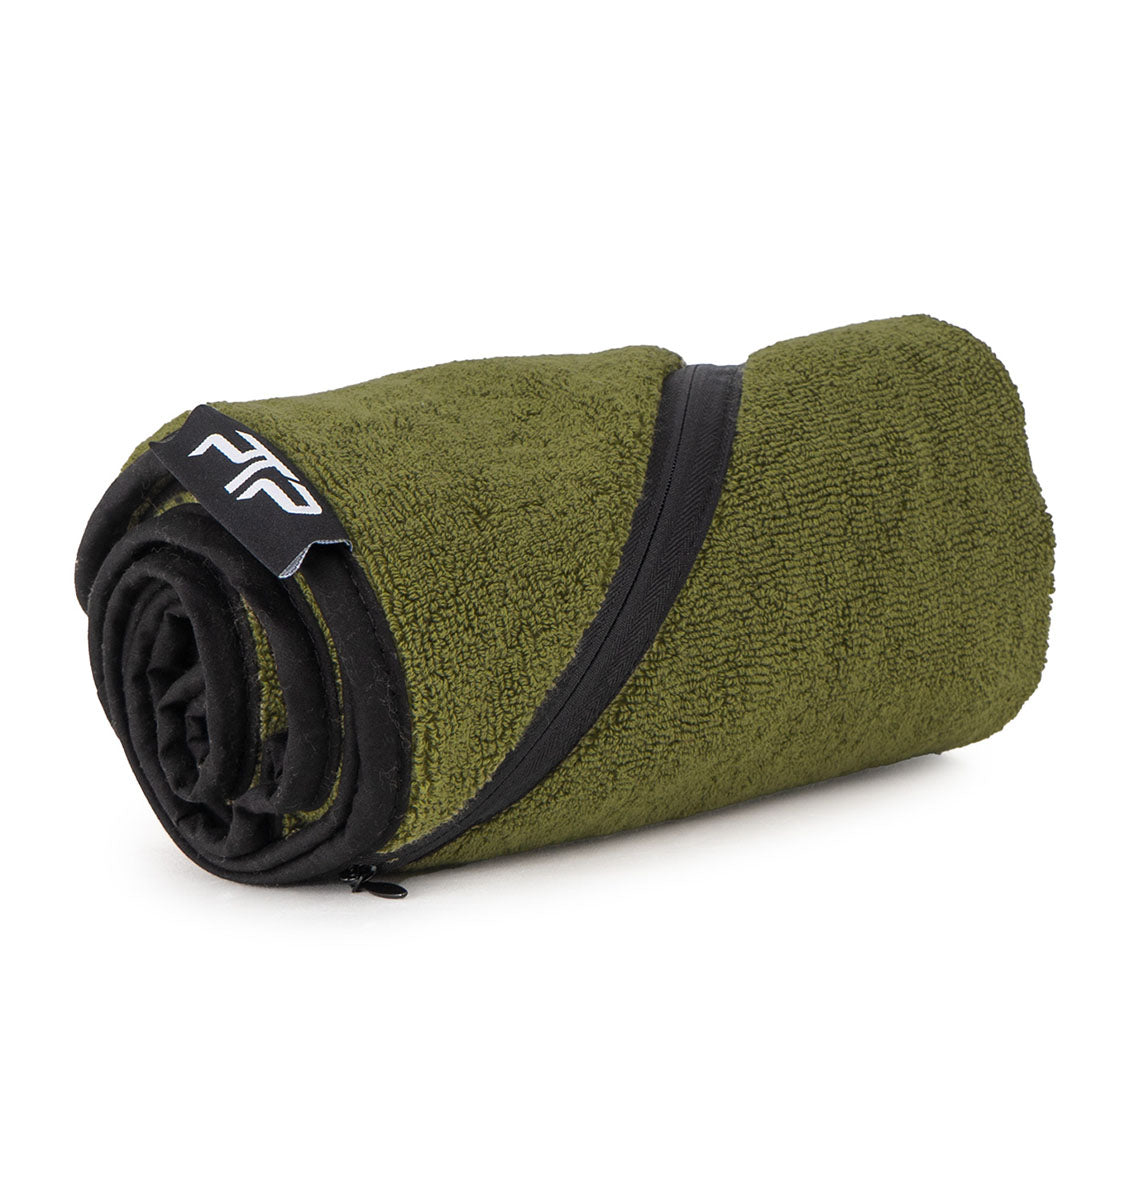 PTP Sports Pro Cotton Towel - 3